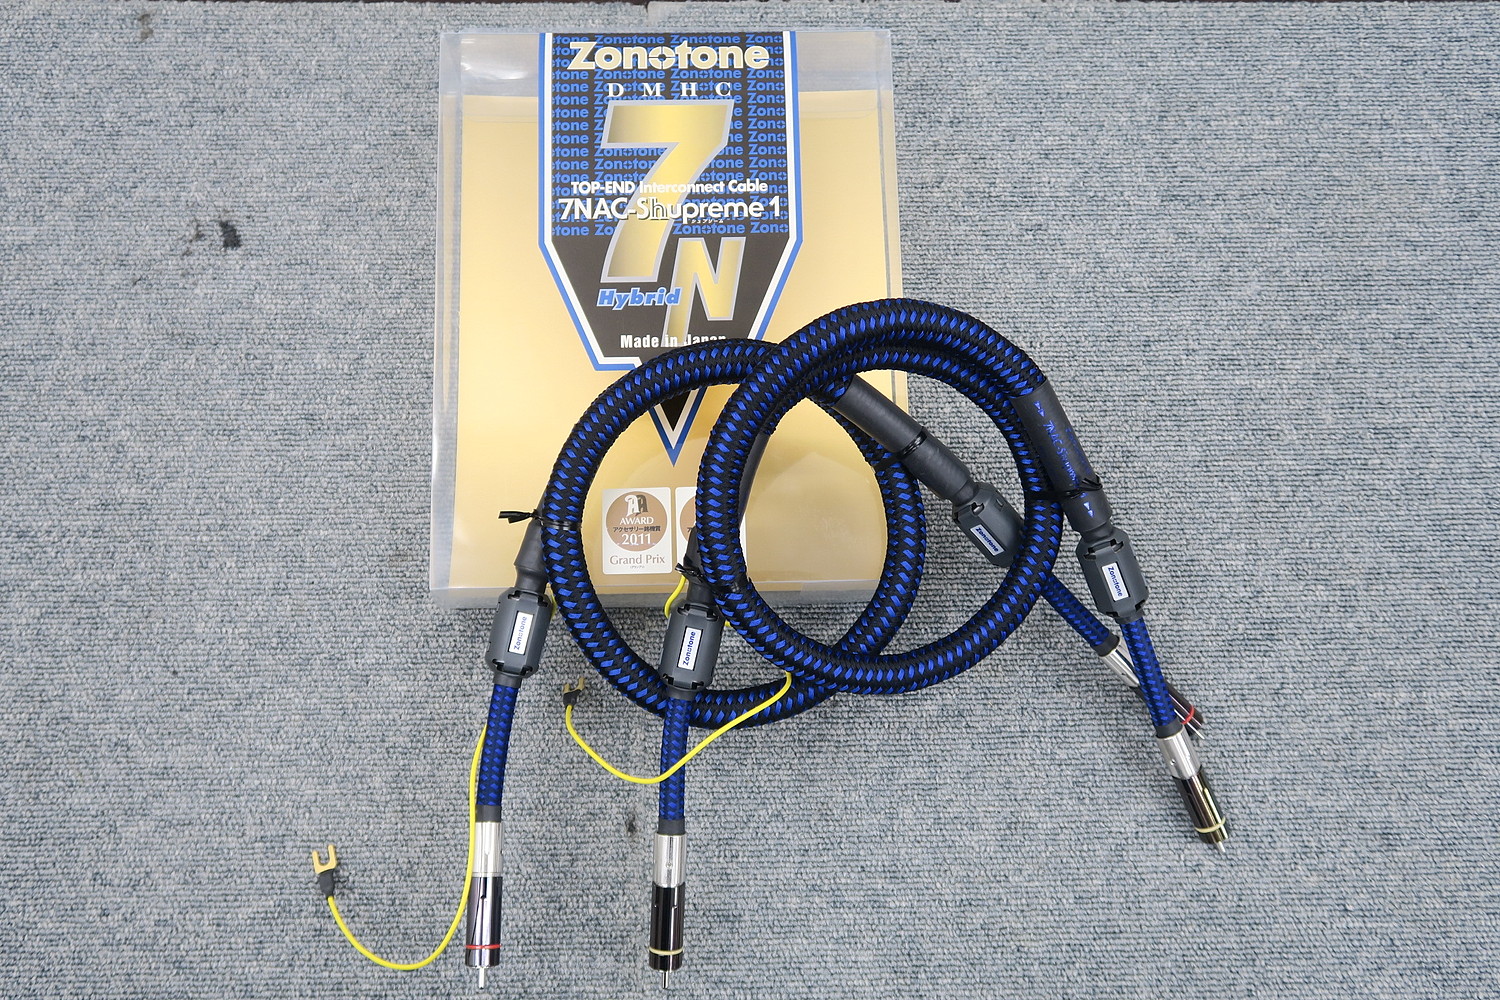 ゾノトーン Zonotone 7NAC-Shupreme1(1.0m) RCAケーブルペア 元箱付 